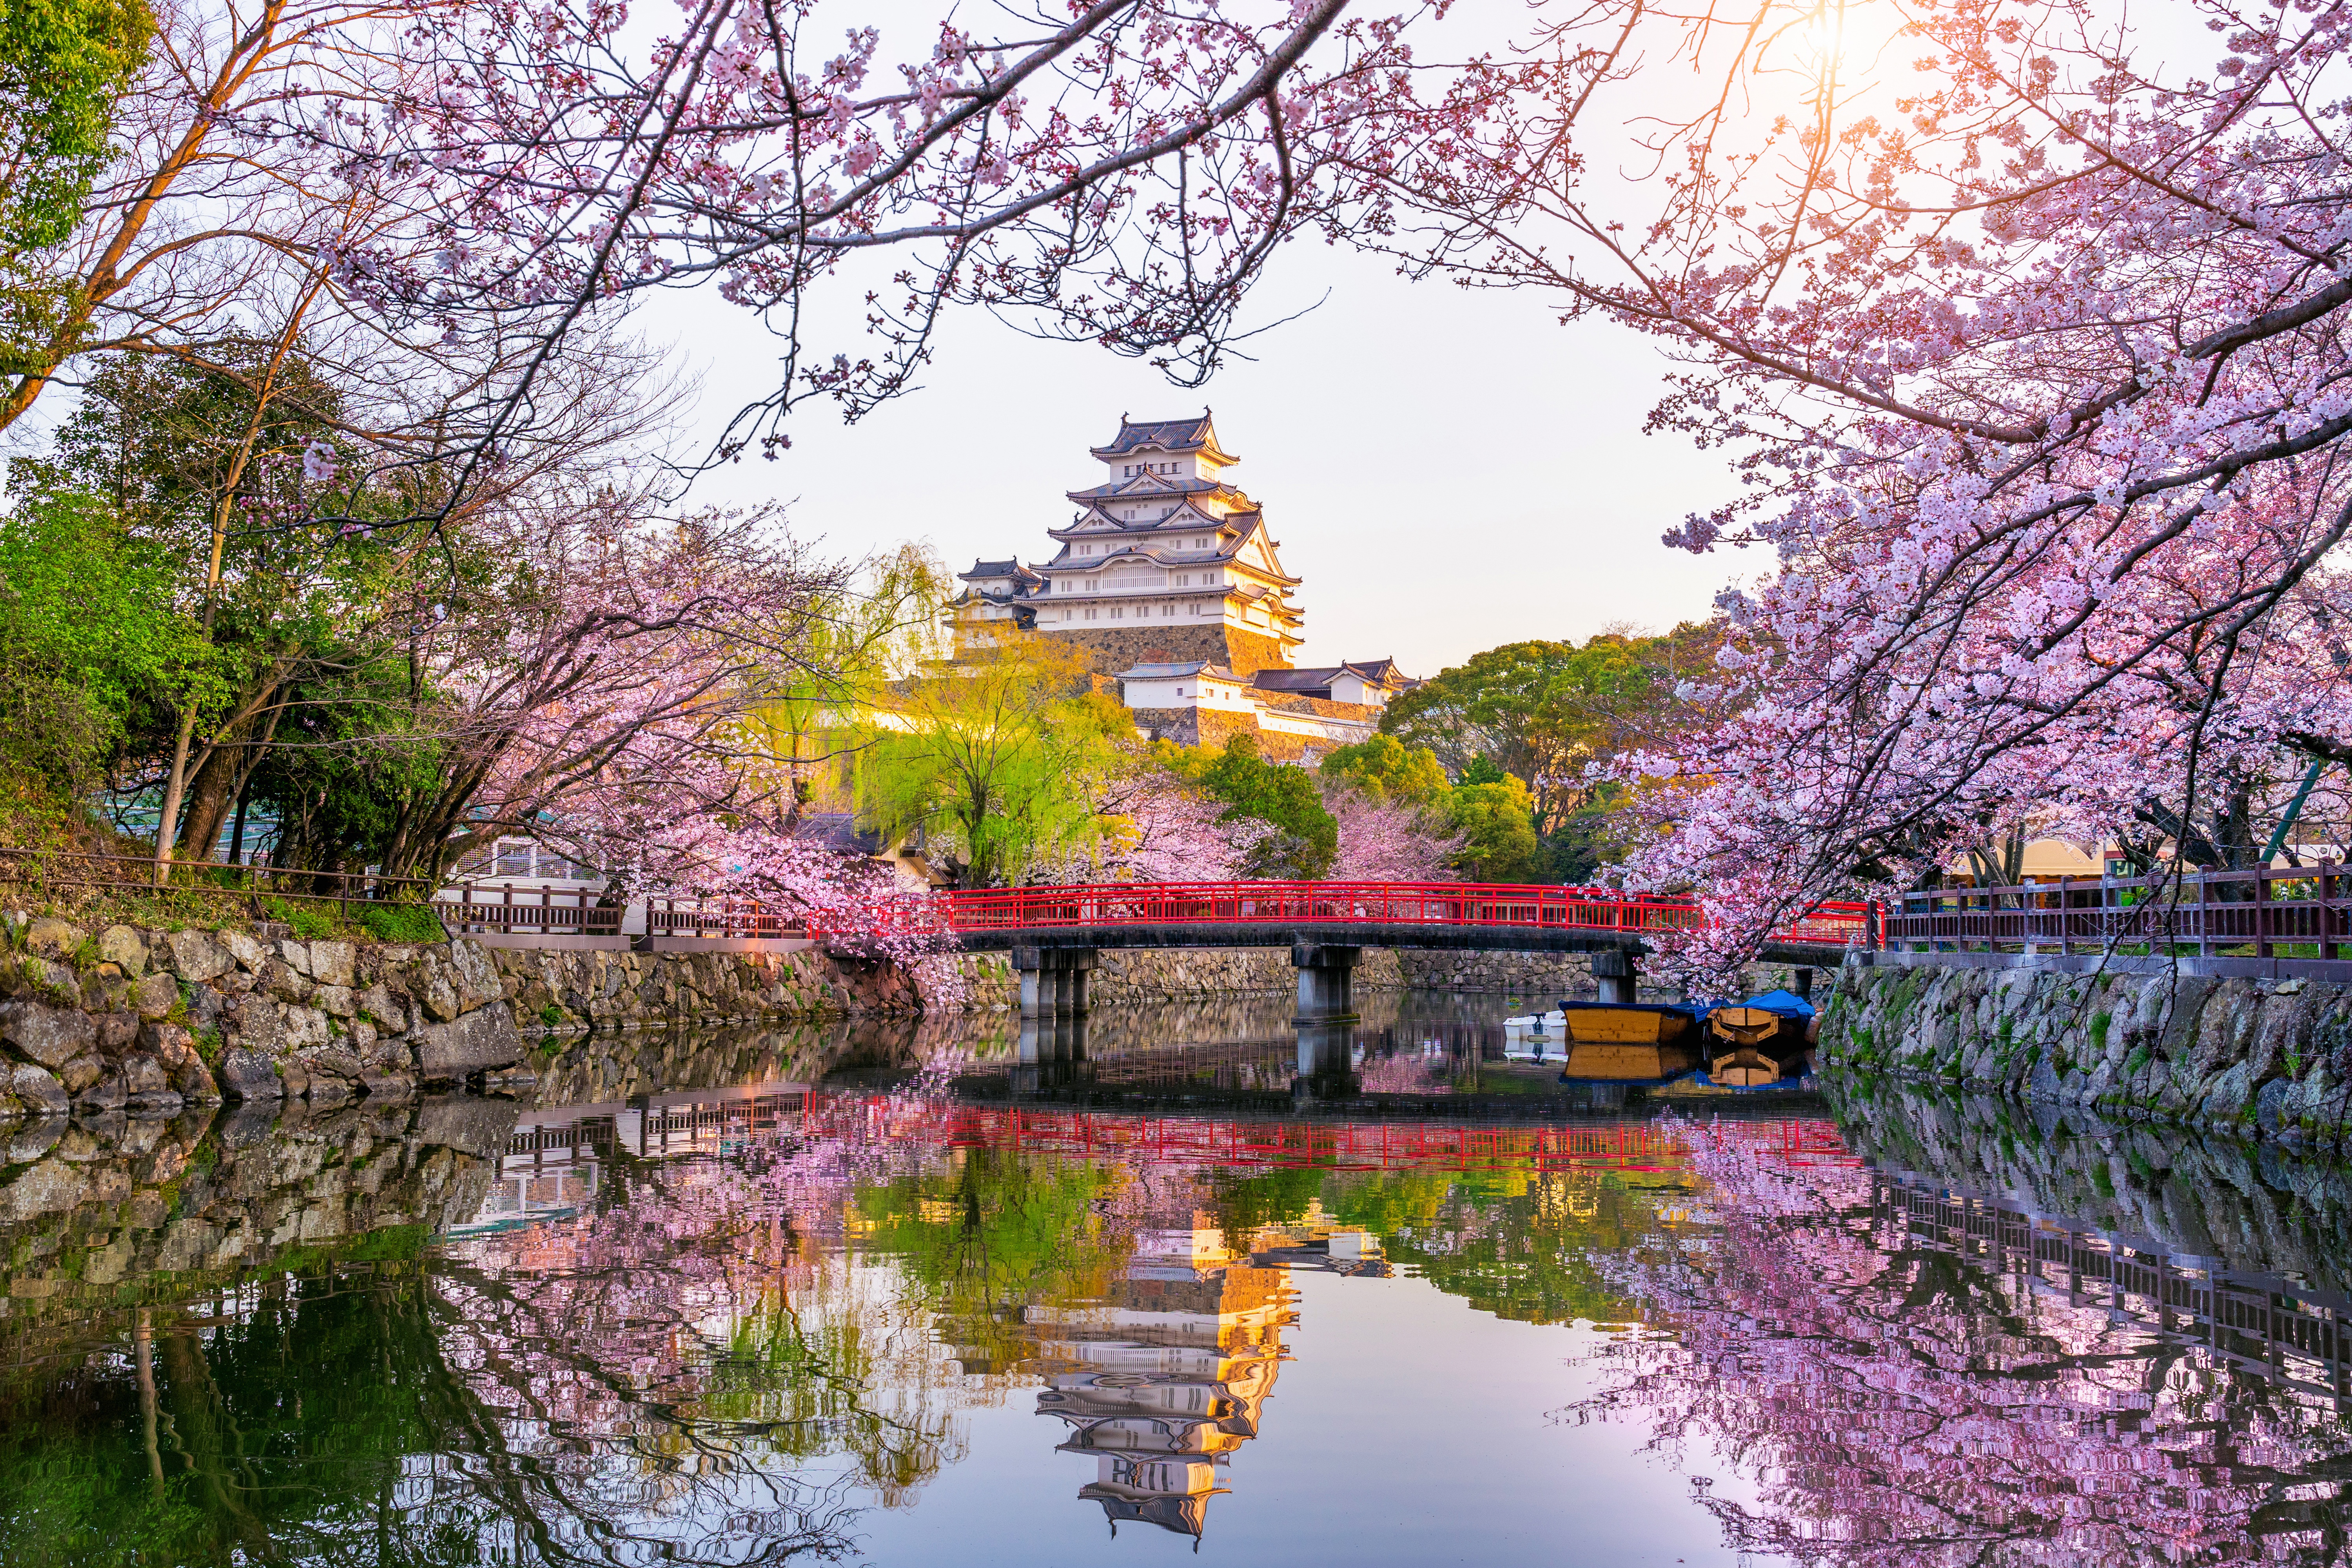 Japan Sakura 4k Ultra HD Wallpaper, Blossom, Reflection, Spring, Japan, Castle, Sakura HD Wallpaper